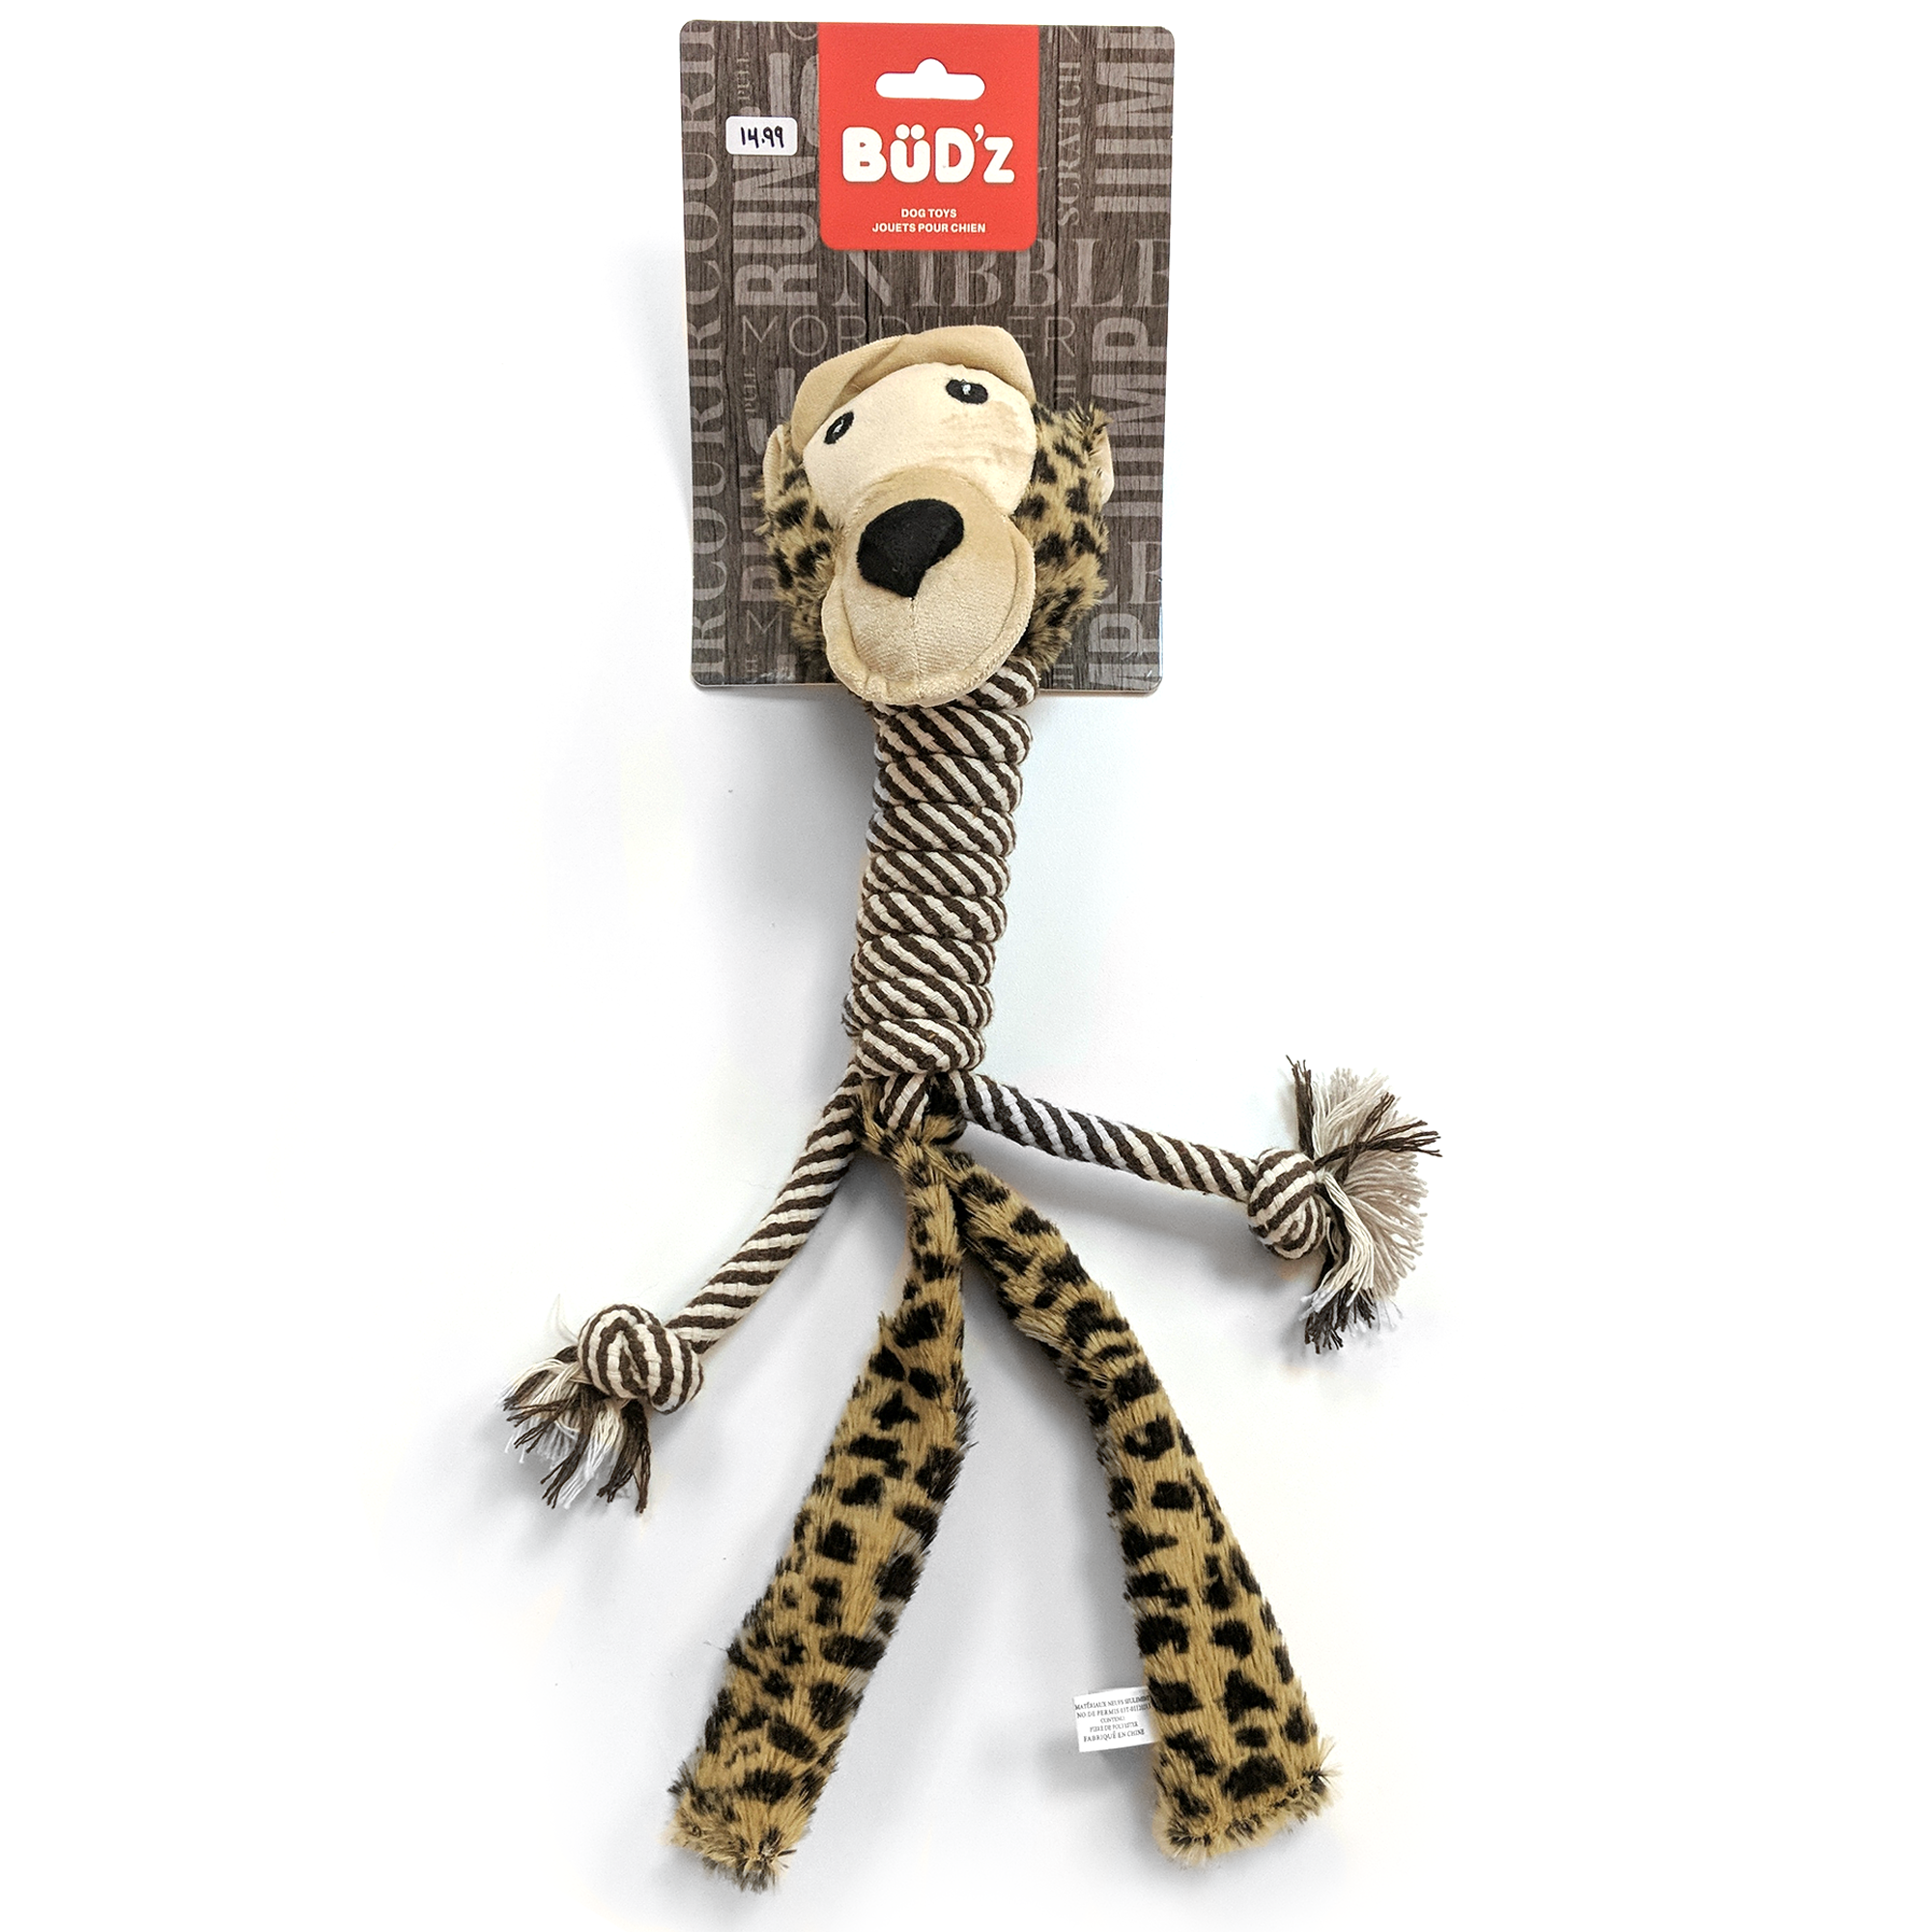 BüD’z Dog Toy, Plush with Cotton Long Neck, 15" Monkey